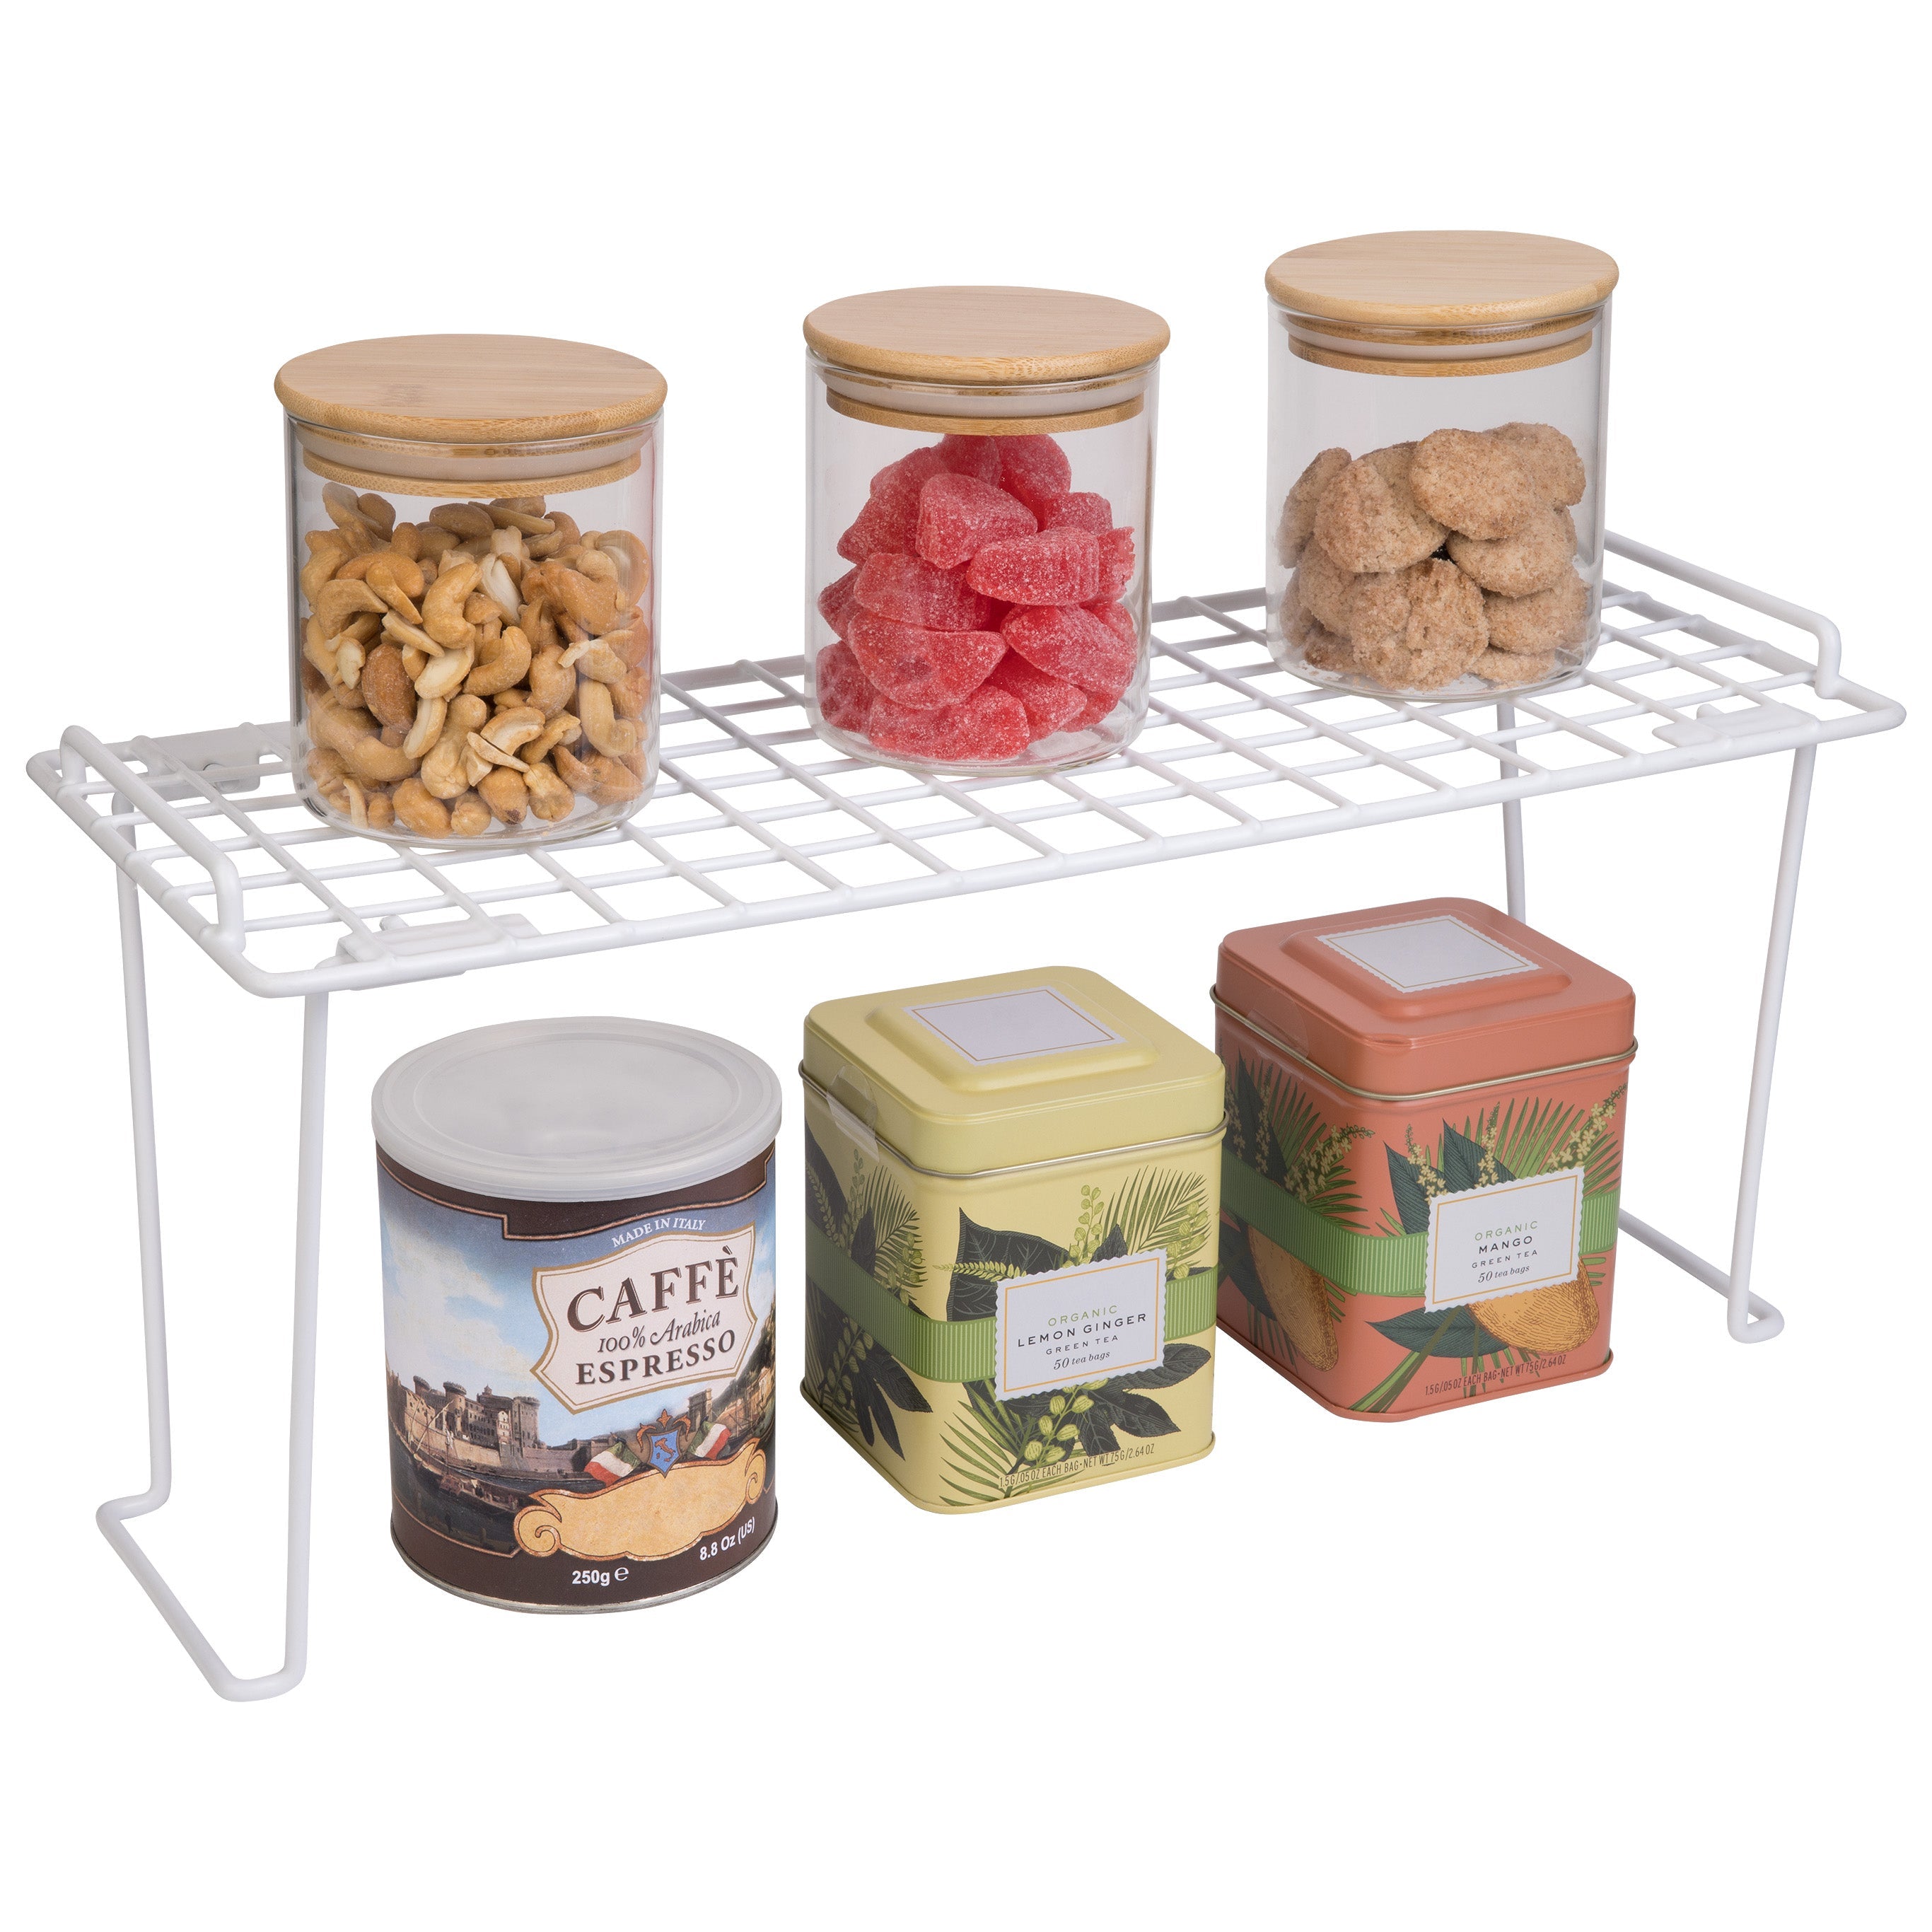 http://www.shopsmartdesign.com/cdn/shop/products/small-stacking-cabinet-shelf-rack-smart-design-kitchen-8410118-incrementing-number-457924.jpg?v=1679337094